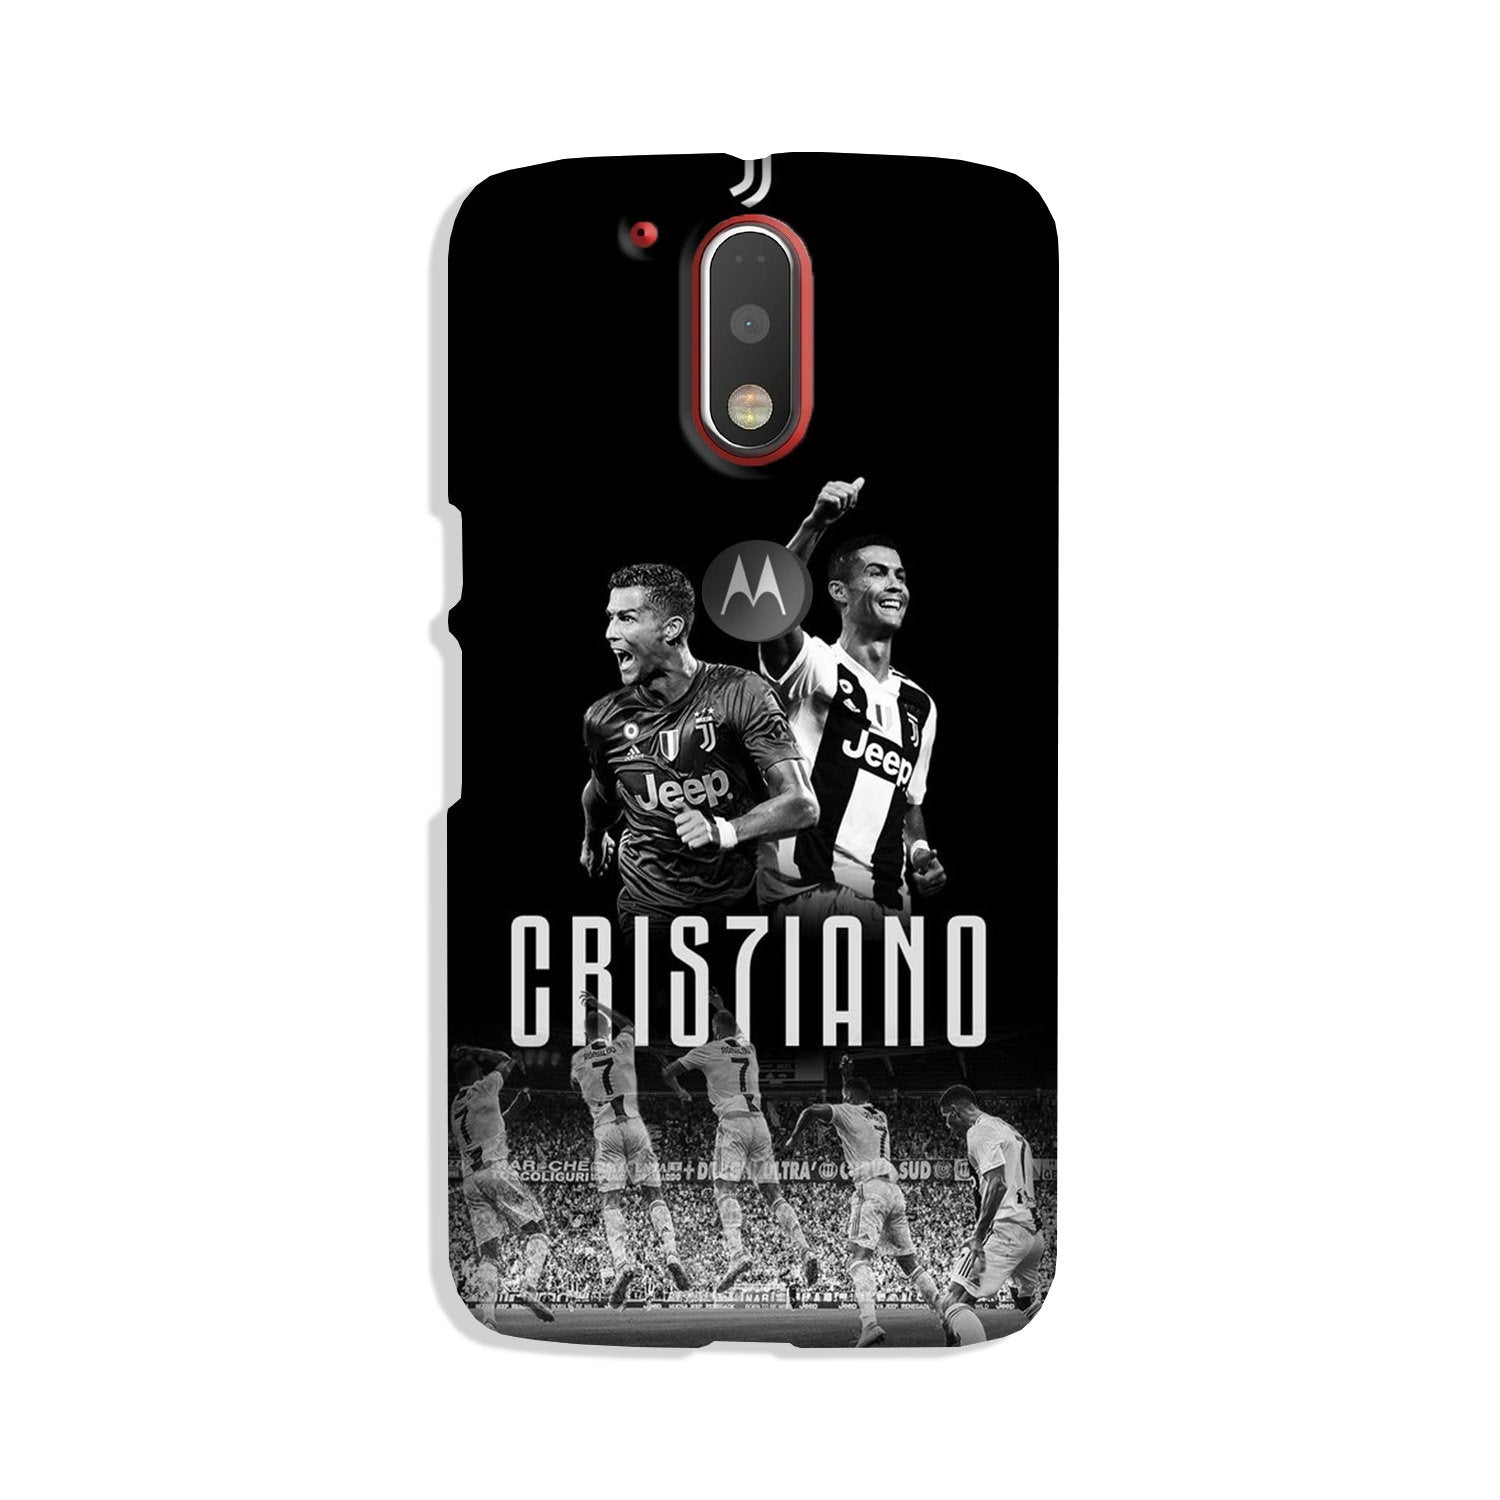 Cristiano Case for Moto G4 Plus(Design - 165)